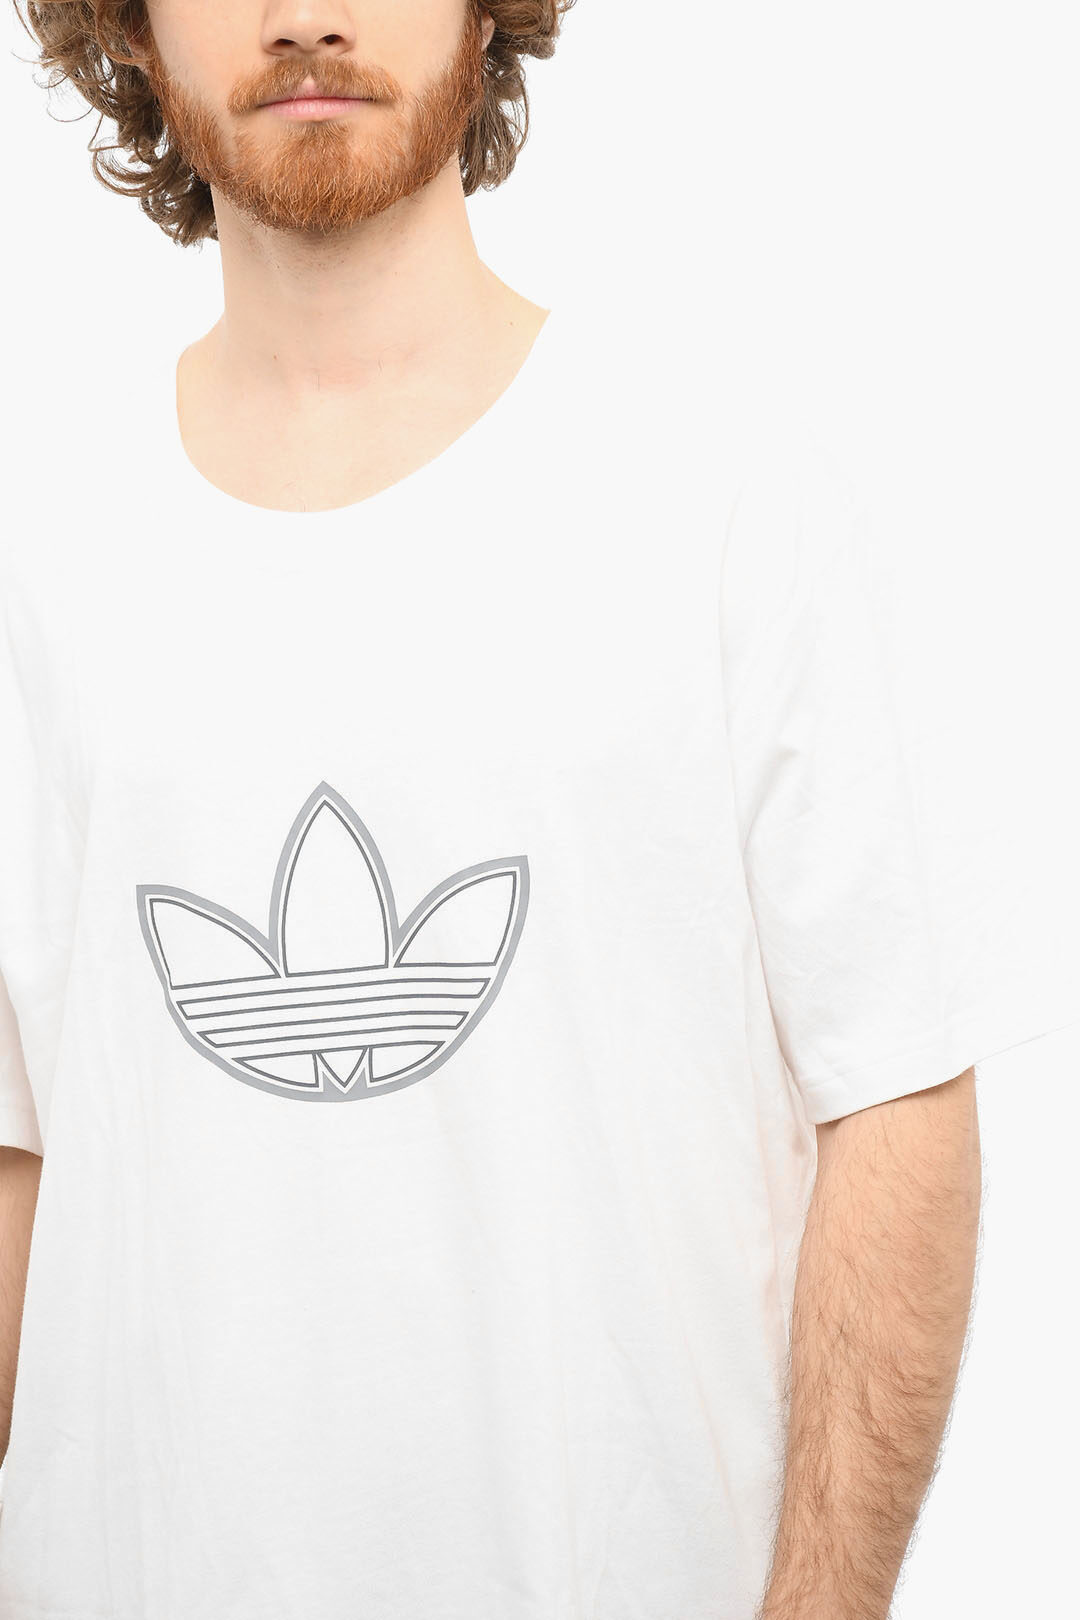 Piket gedragen menu Adidas Logo Print OUTLINE Short Sleeved T-shirt men - Glamood Outlet